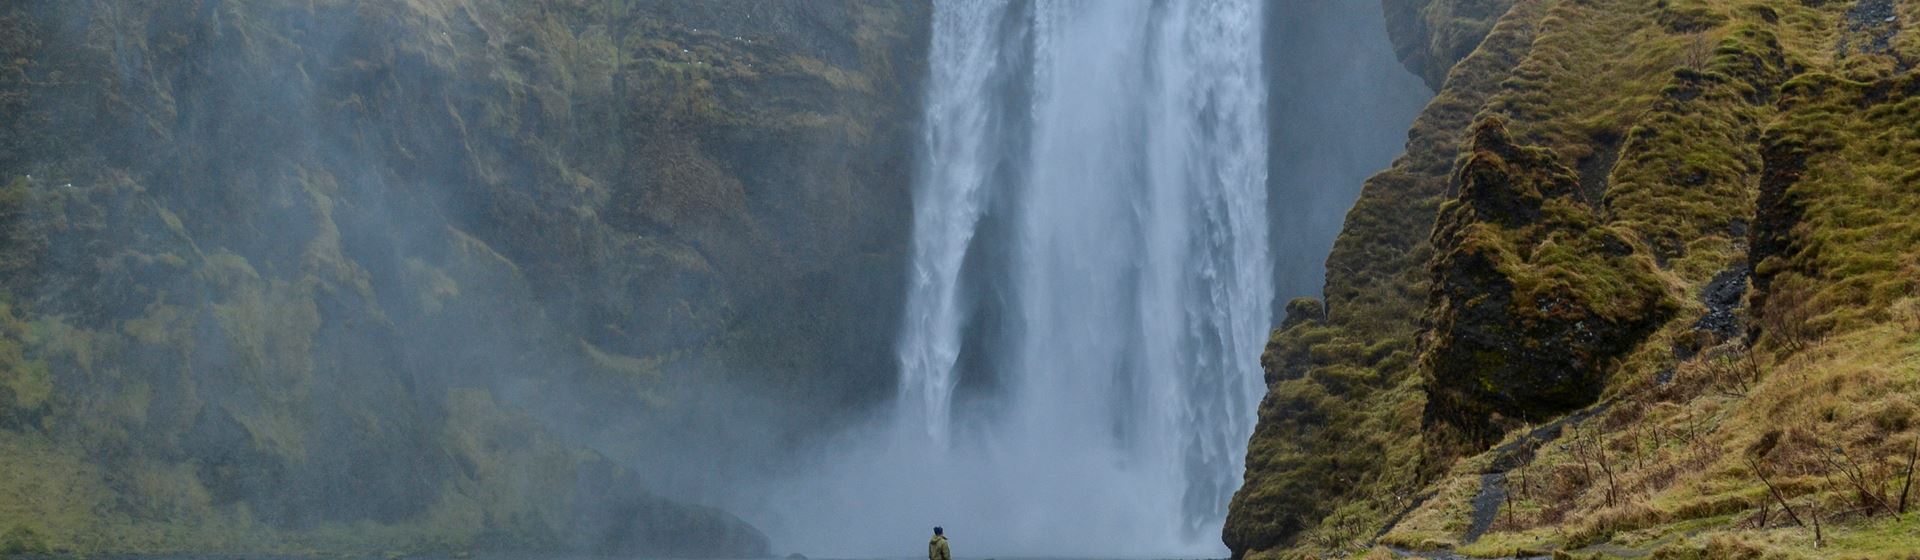 De 60 meter hoge en 25 meter brede waterval Skógafoss in het zuiden van IJsland. Voor de waterval staat een vrouw